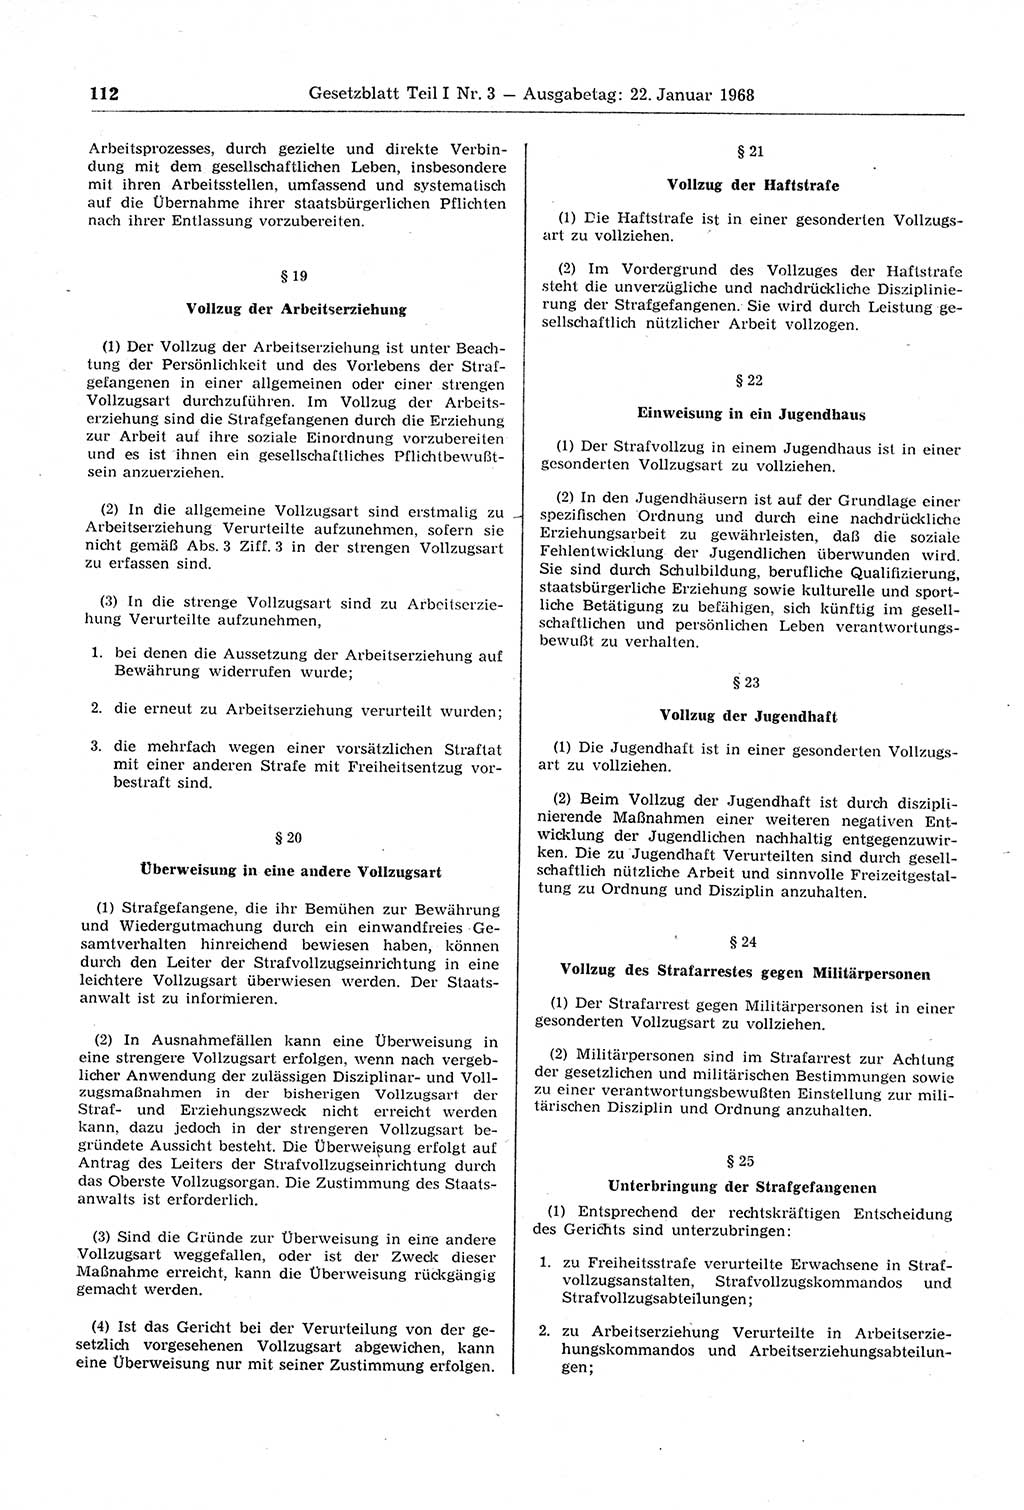 Gesetzblatt (GBl.) der Deutschen Demokratischen Republik (DDR) Teil Ⅰ 1968, Seite 112 (GBl. DDR Ⅰ 1968, S. 112)